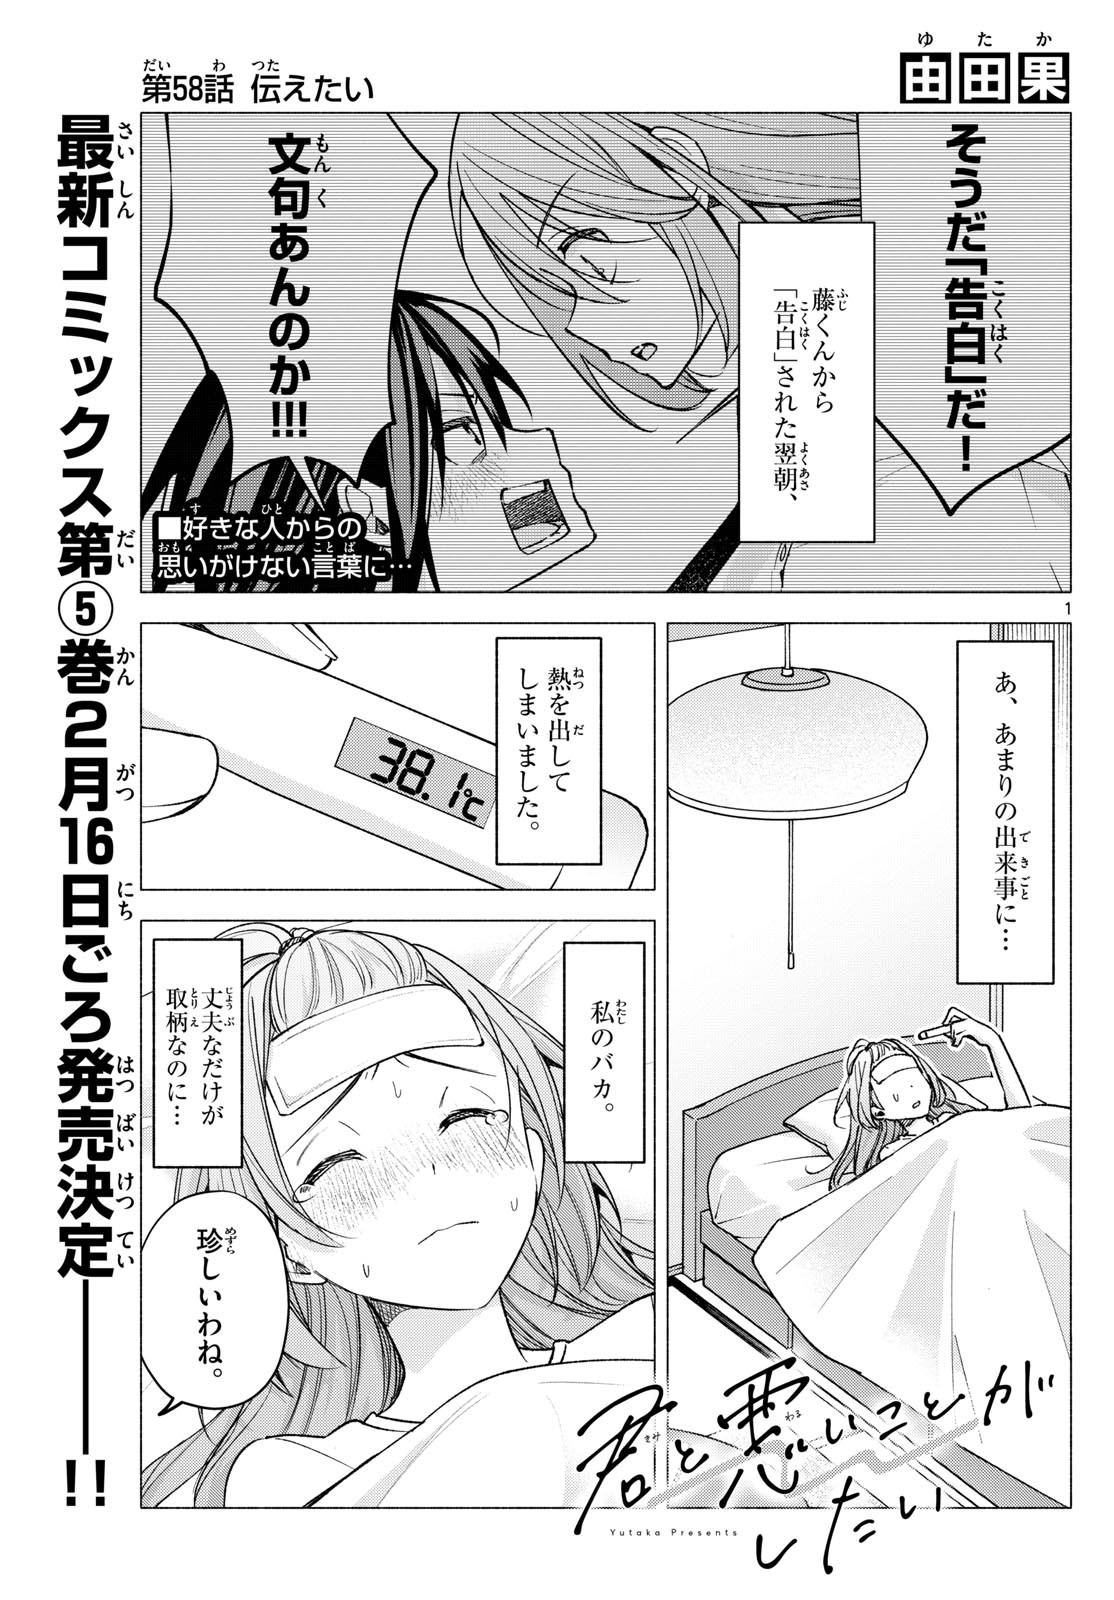 Kimi to Warui Koto ga Shitai - Chapter 058 - Page 1